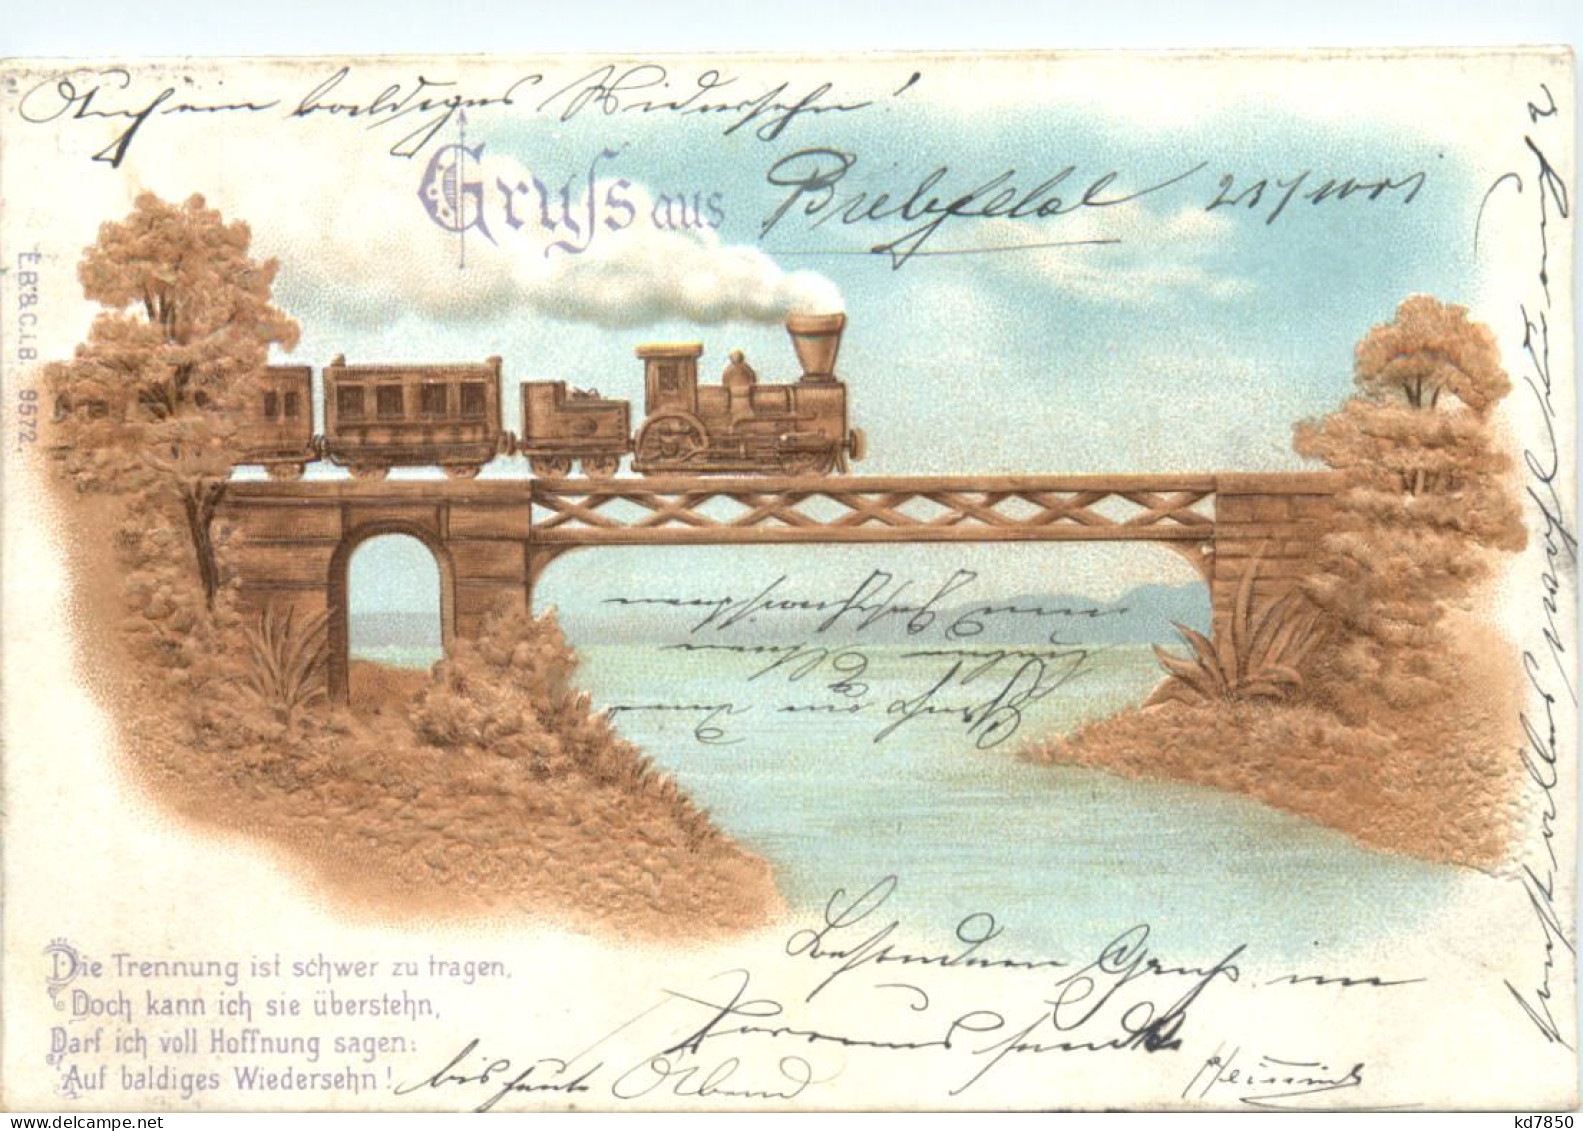 Gruss Aus - Prägekarte Eisenbahn - Gruss Aus.../ Grüsse Aus...